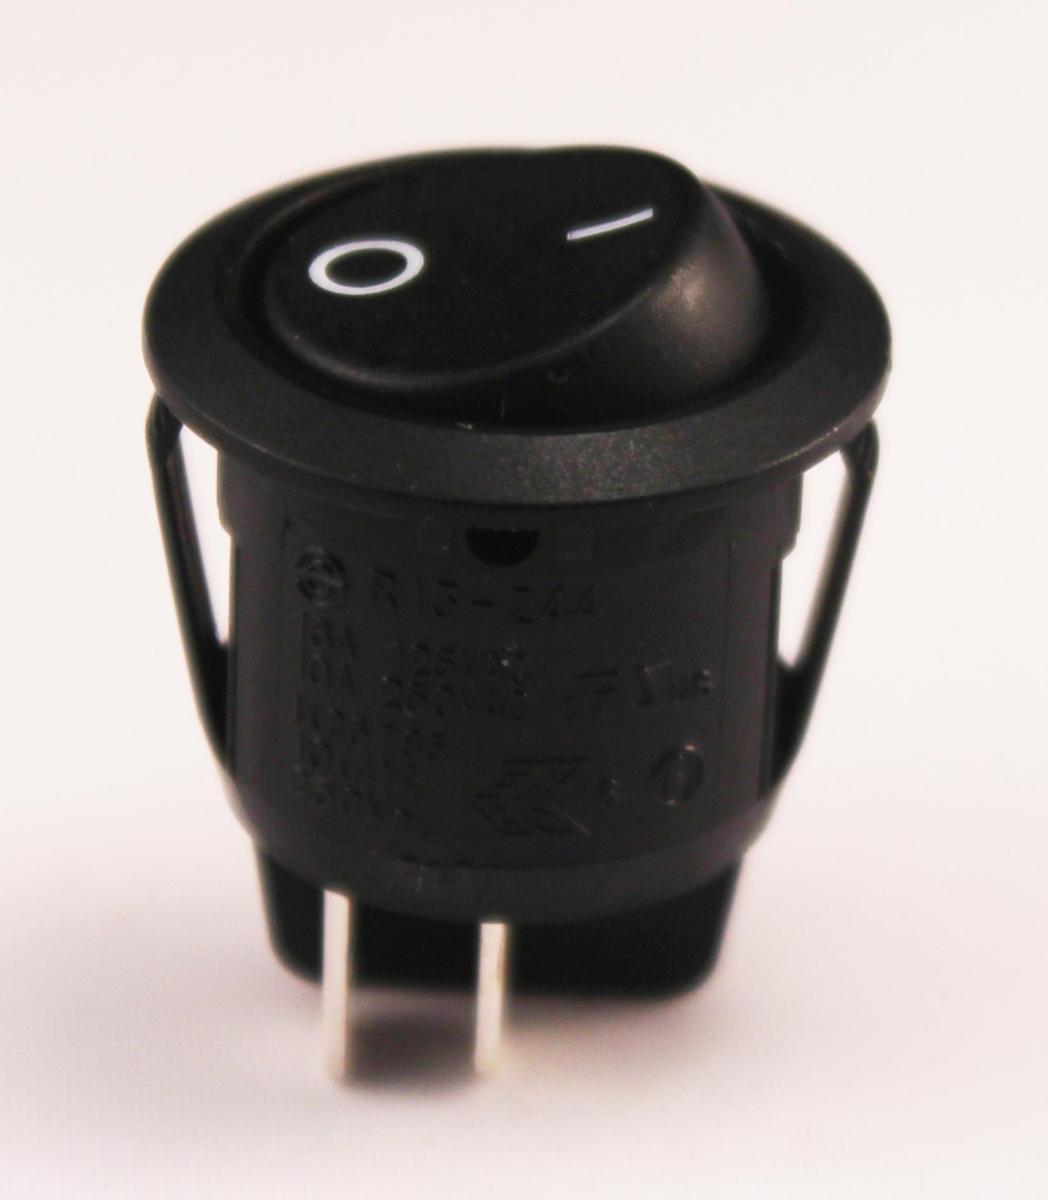 Interrupteur à bascule rectangulaire marqué o - (On-Off) bipolaire 13mm x  19mm